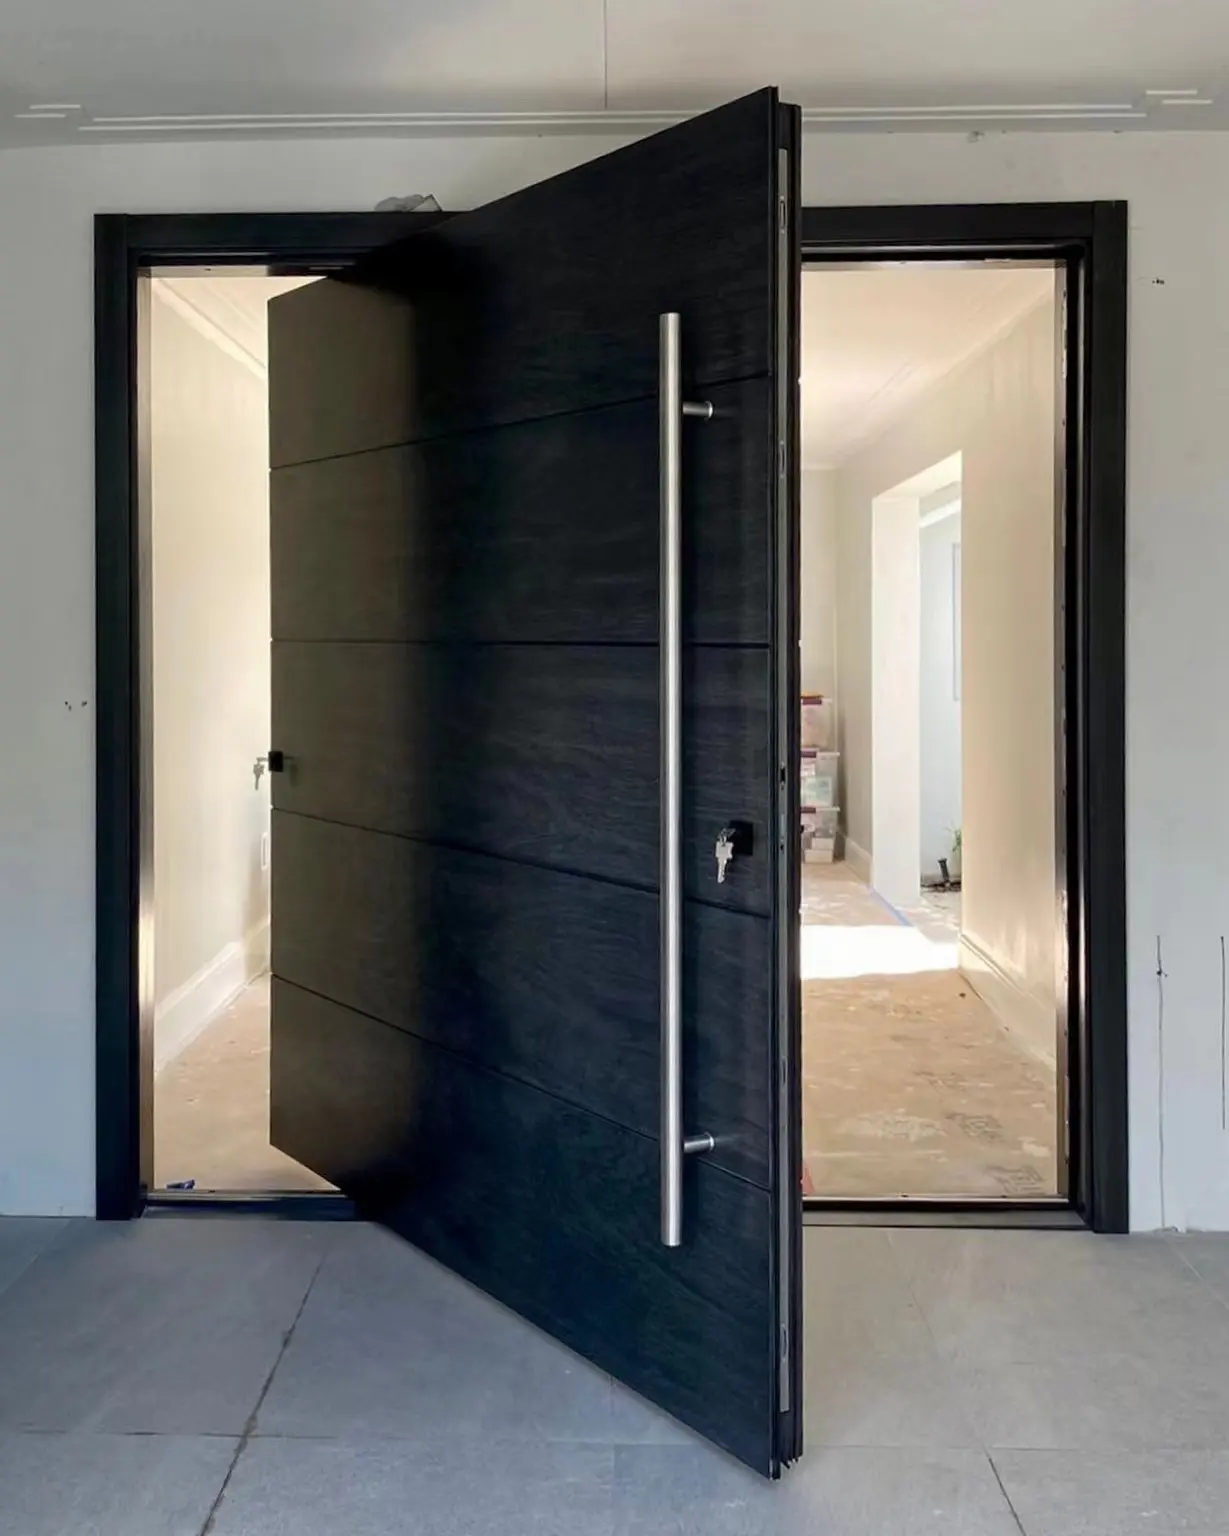 ยอดขายที่นิยมการออกแบบ Oem บริการประตูที่ทันสมัยสำหรับบ้านของแข็งภายในประตูไม้ประตู